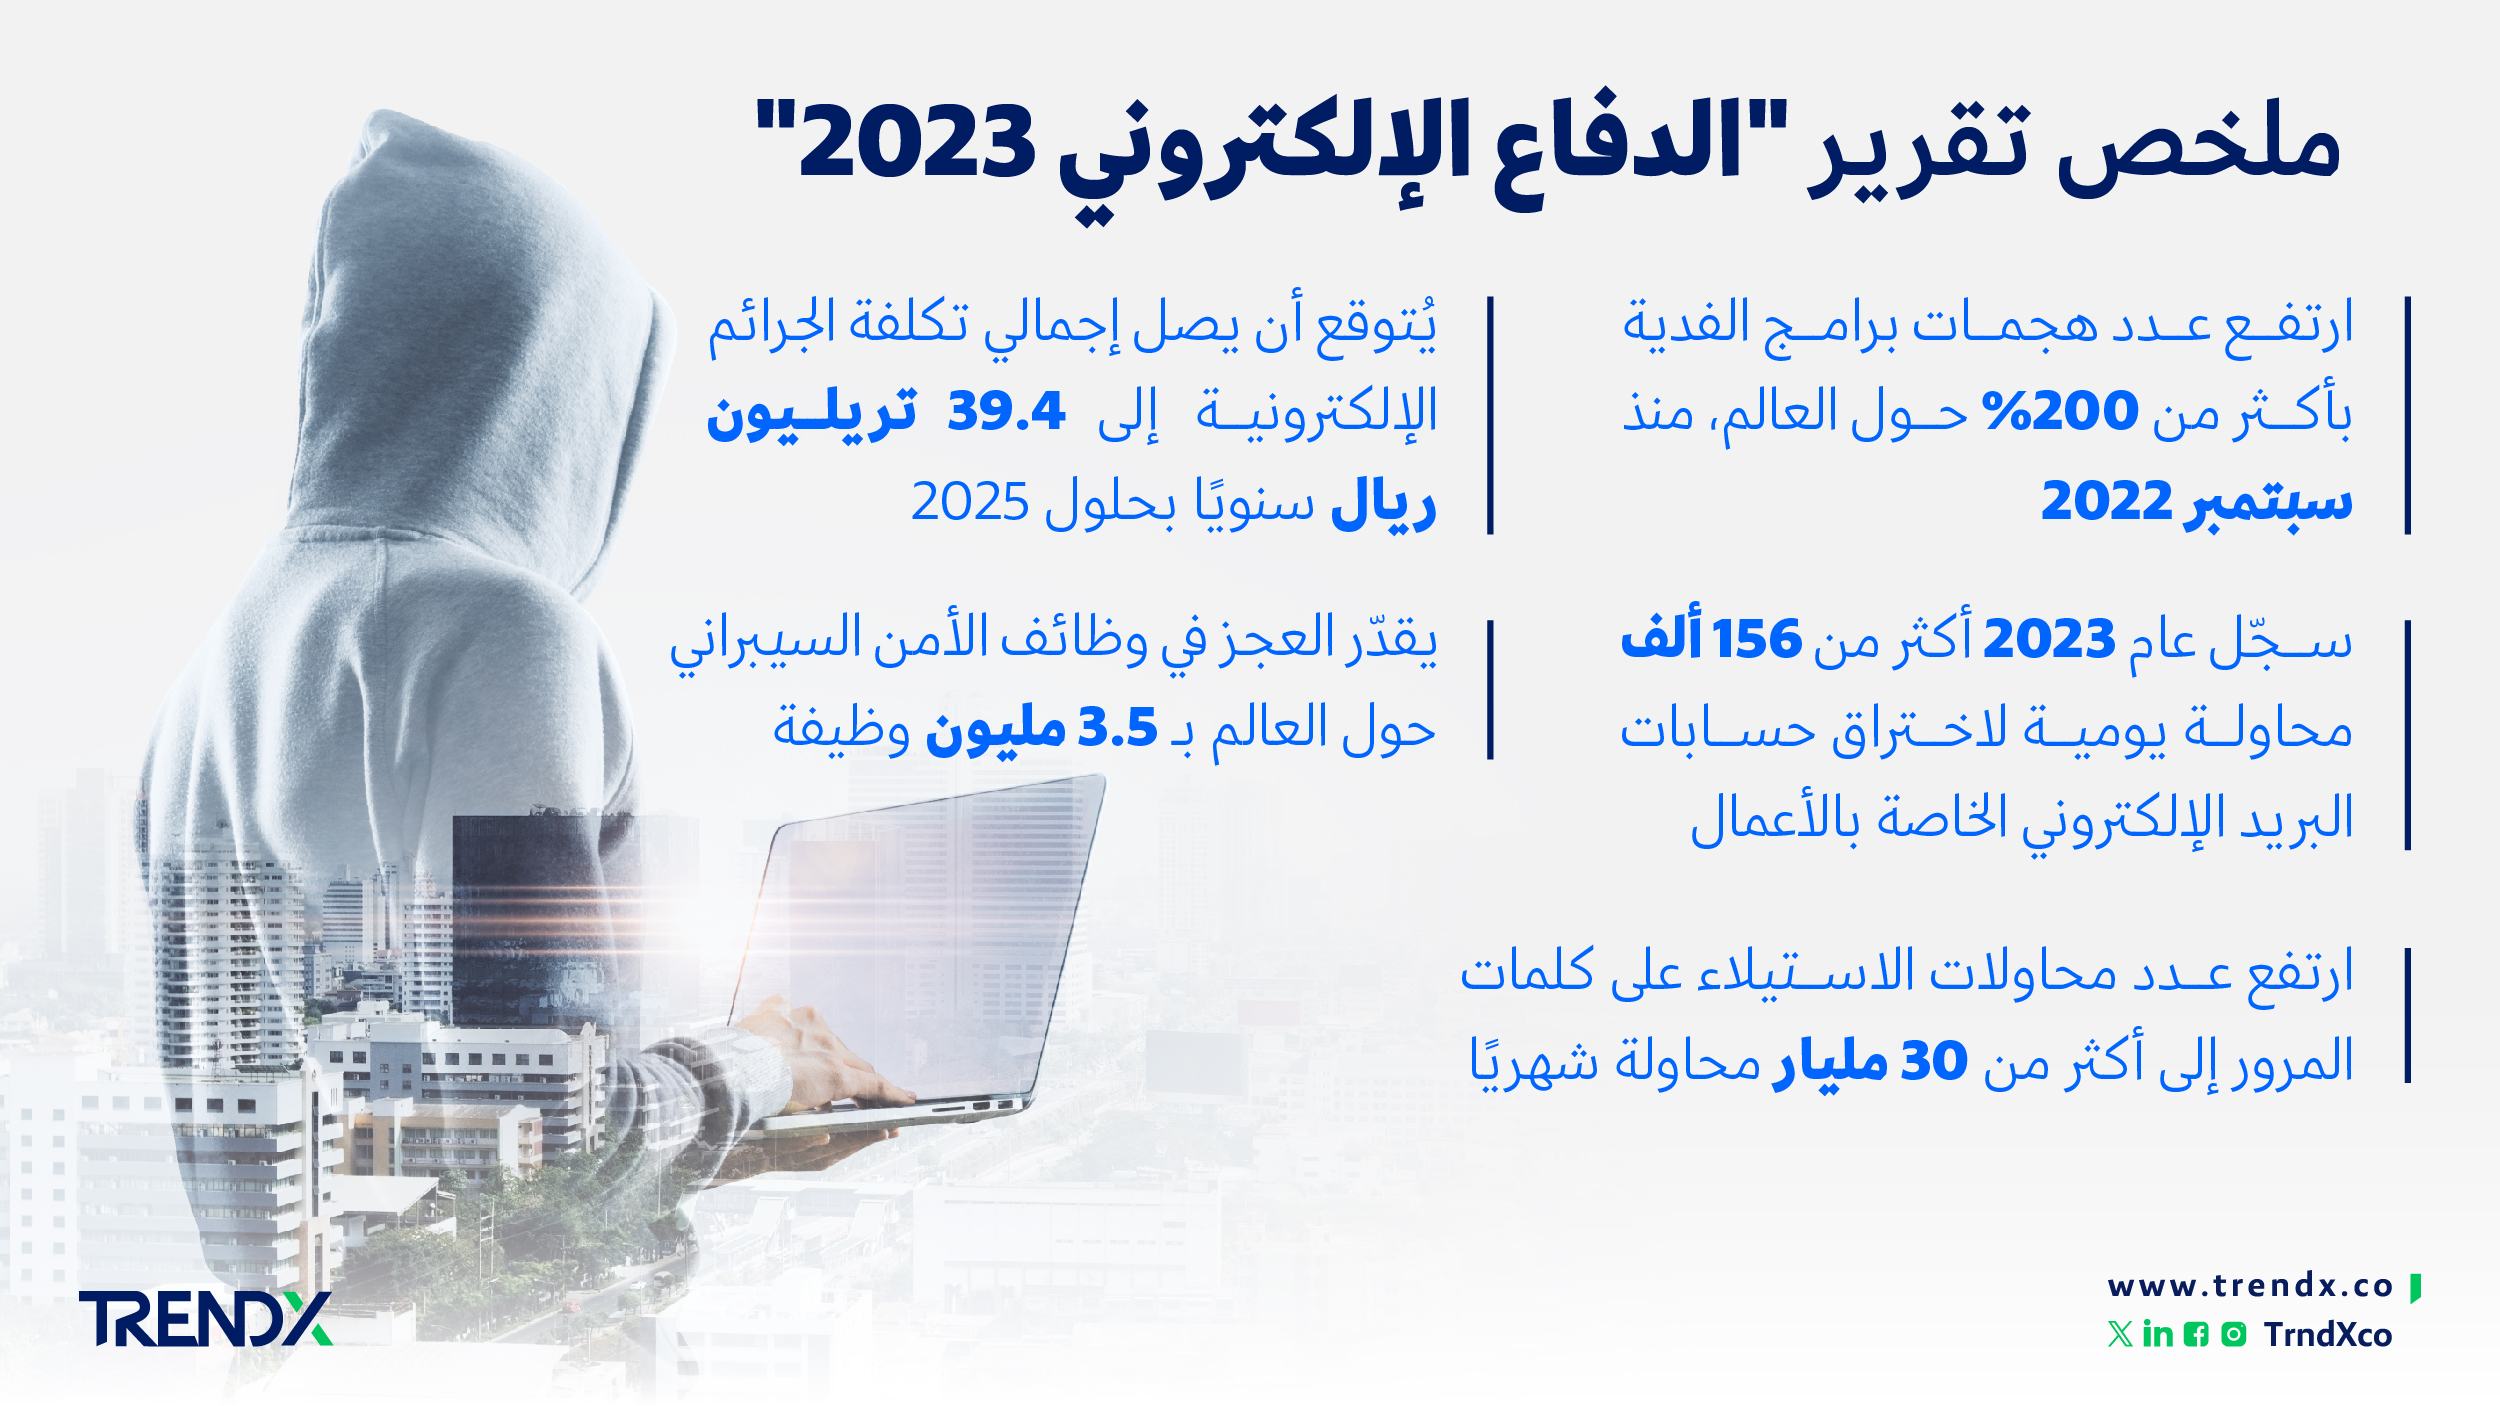 ملخص تقرير الدفاع الإلكتروني 2023 ثروات السعوديين في الفترة من عام 2000 إلى 2022 01